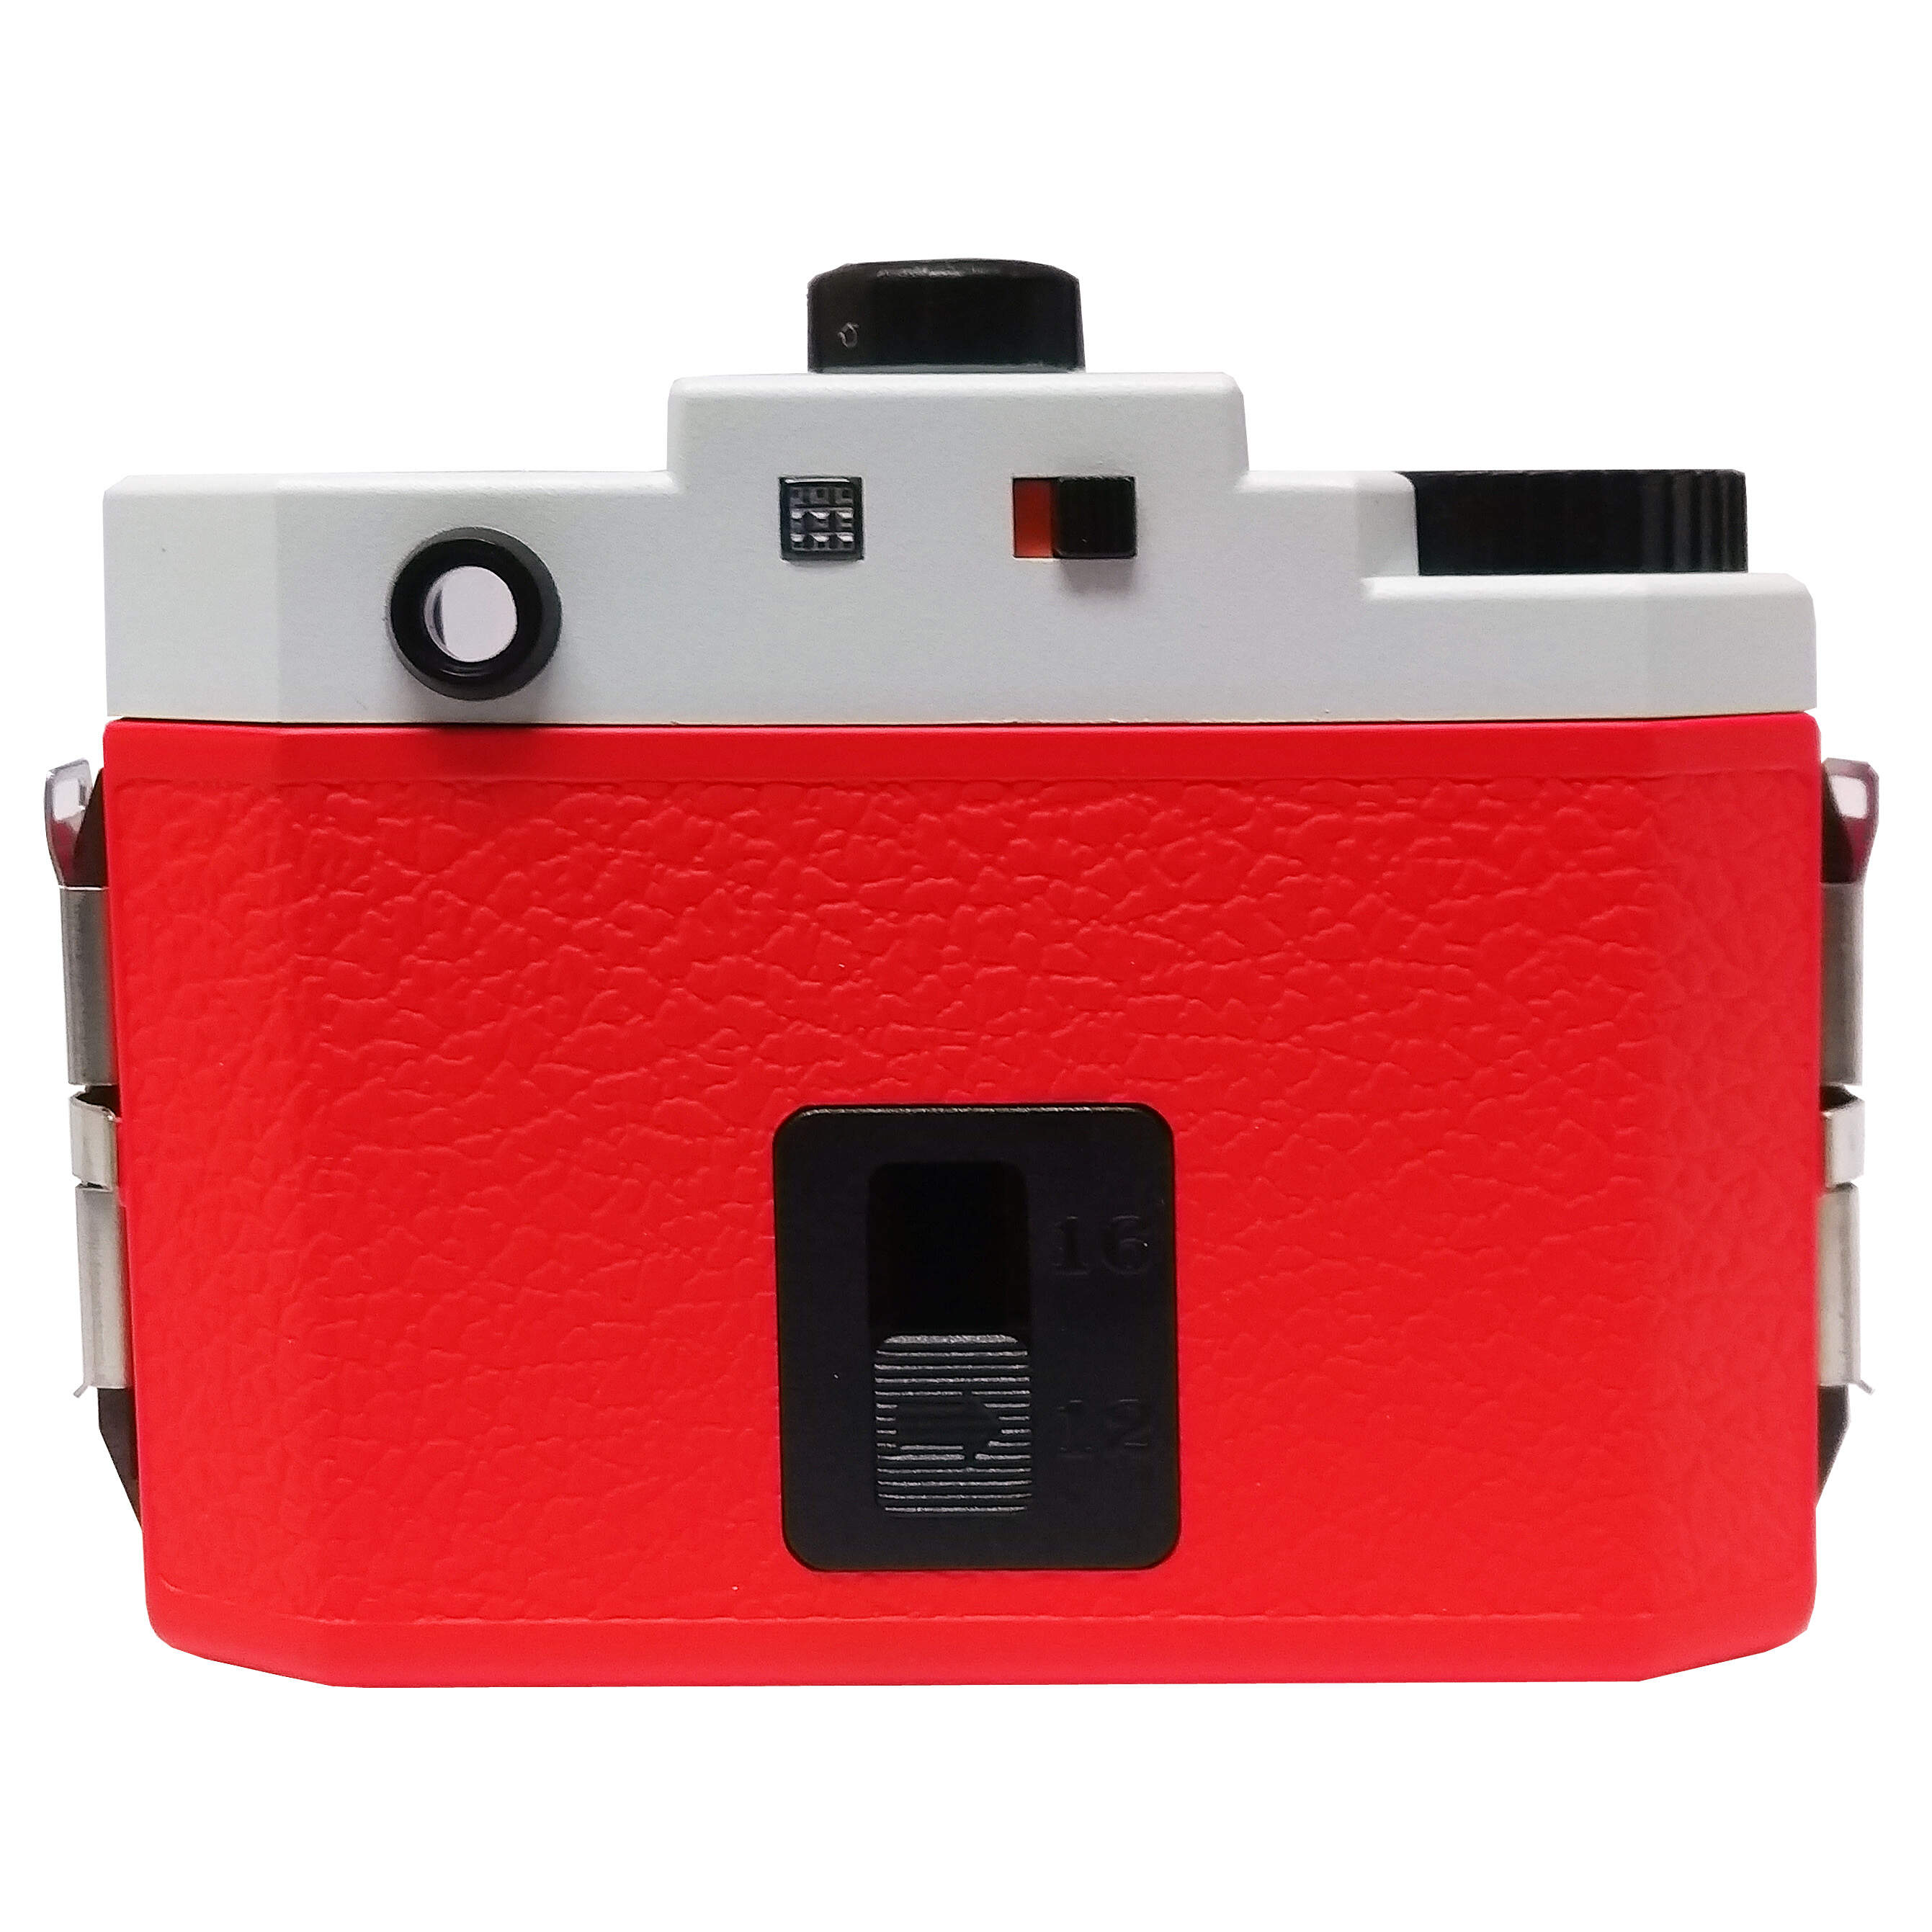 HOLGA 120GCFN White & Red Film Camera